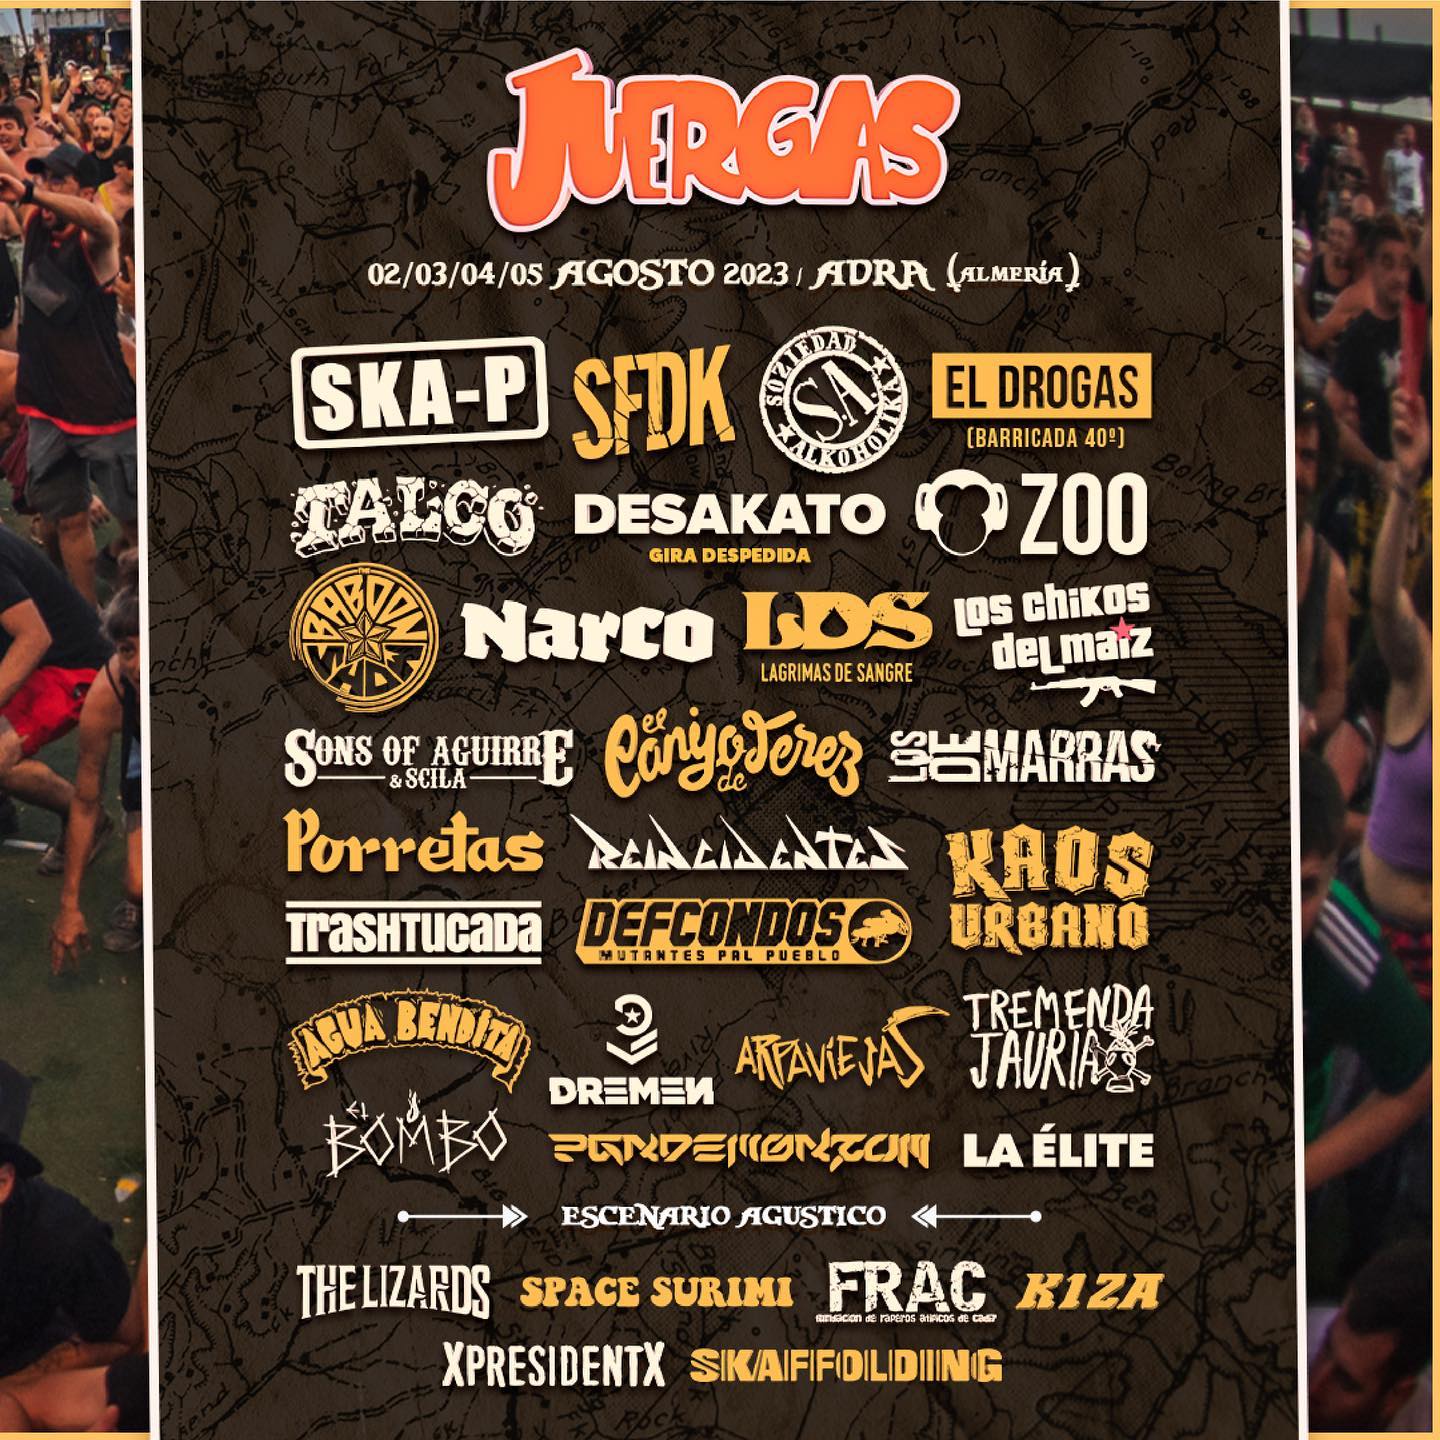 The Juergas Rock Festival – 2/3/4 y 5 de agosto en Adra (Almería)